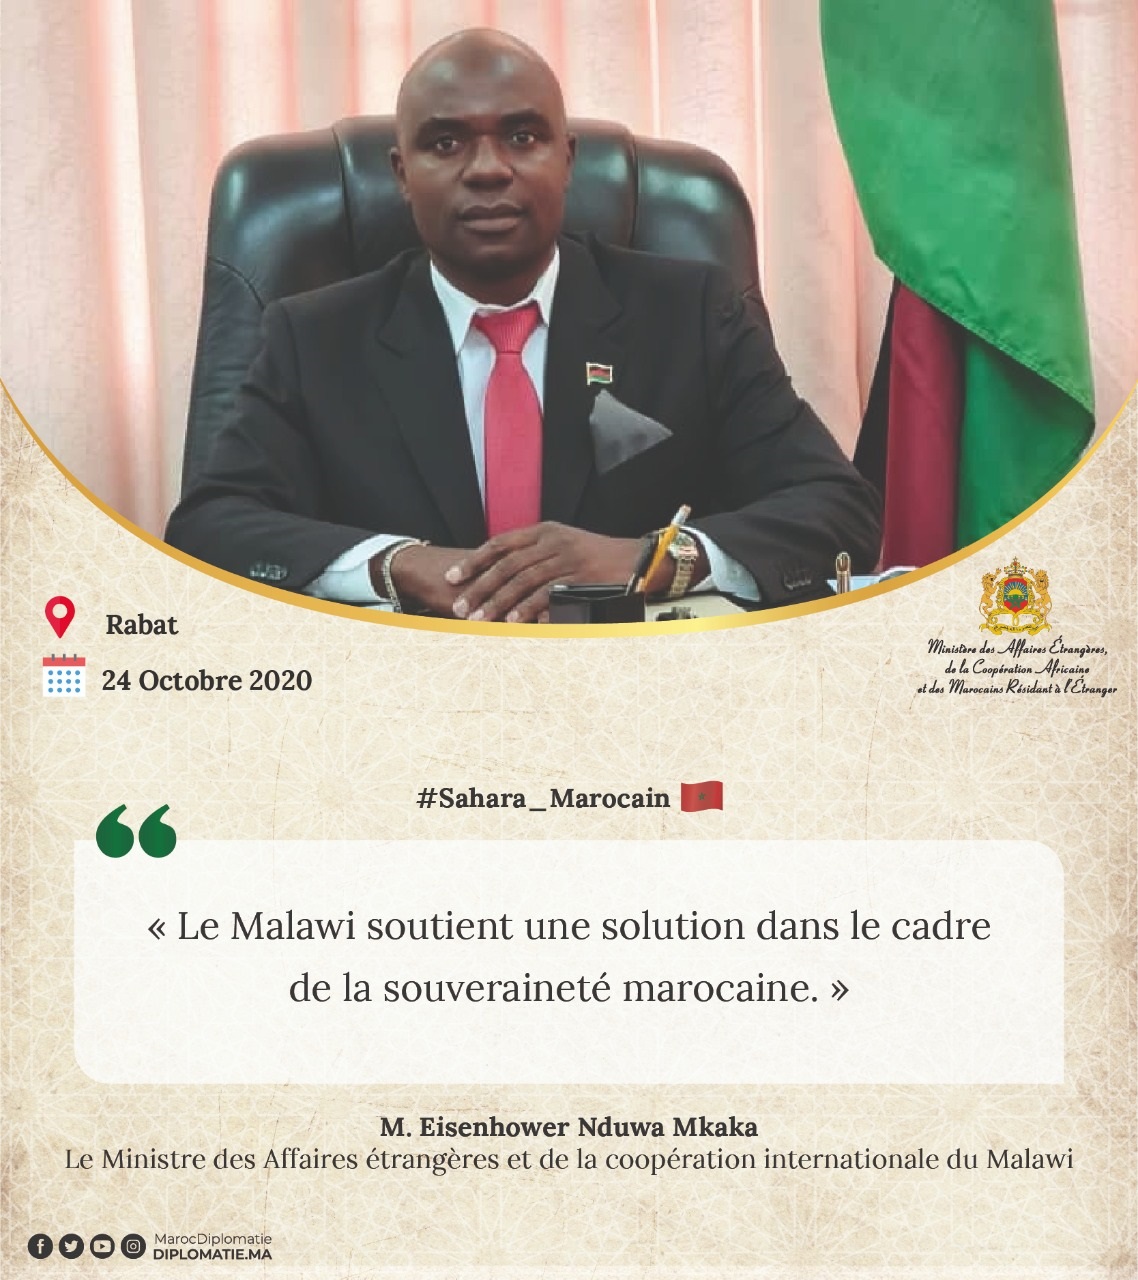 Déclaration de M. Eisenhower Nduwa Mkaka, Ministre des Affaires étrangères et de la coopération internationale du Malawi